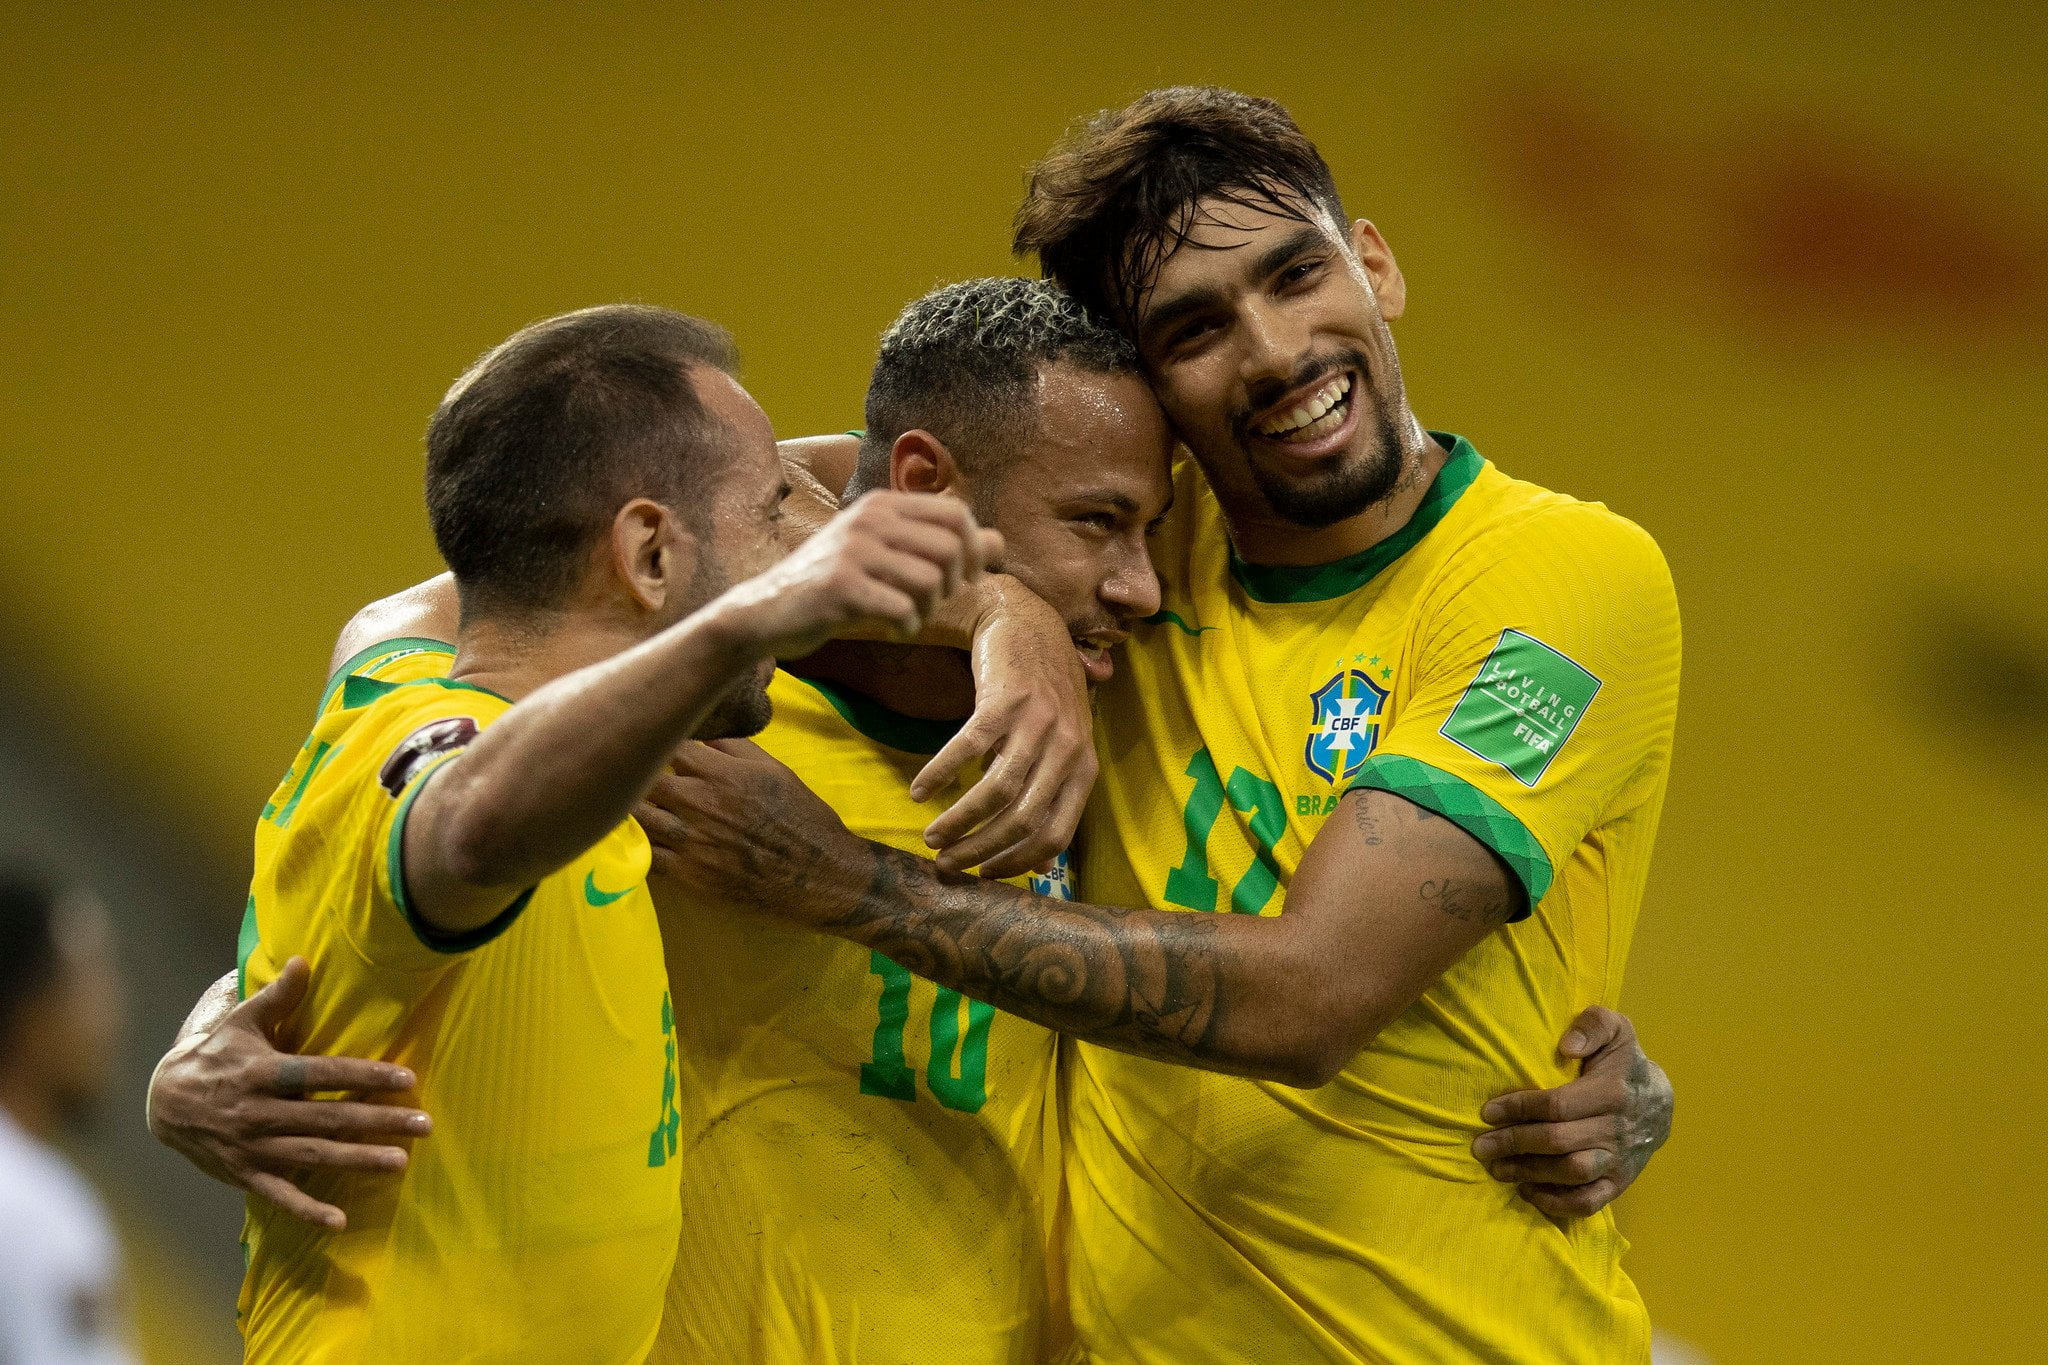 Brasil Derrota O Peru E Segue 100% Nas Eliminatórias Da Copa Do Mundo